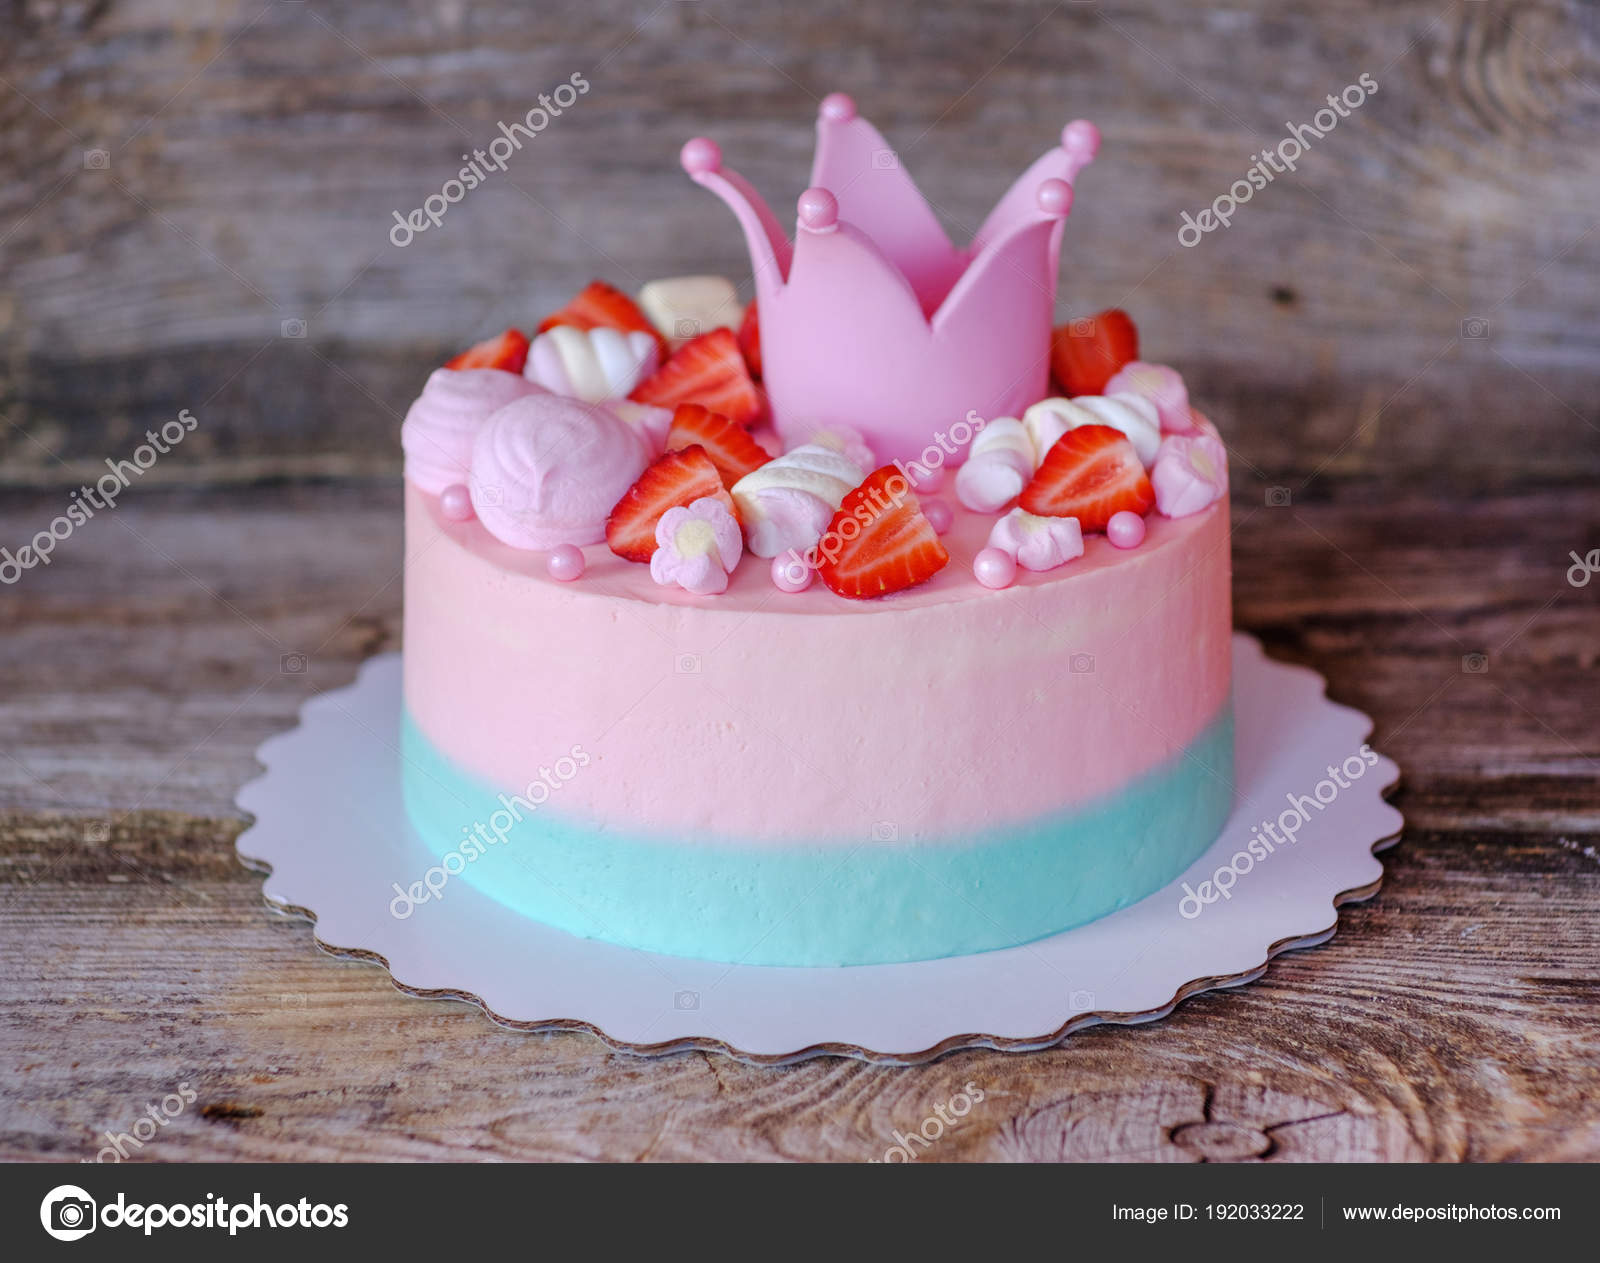 Bolo Princesa- Coroa / Princess Cake